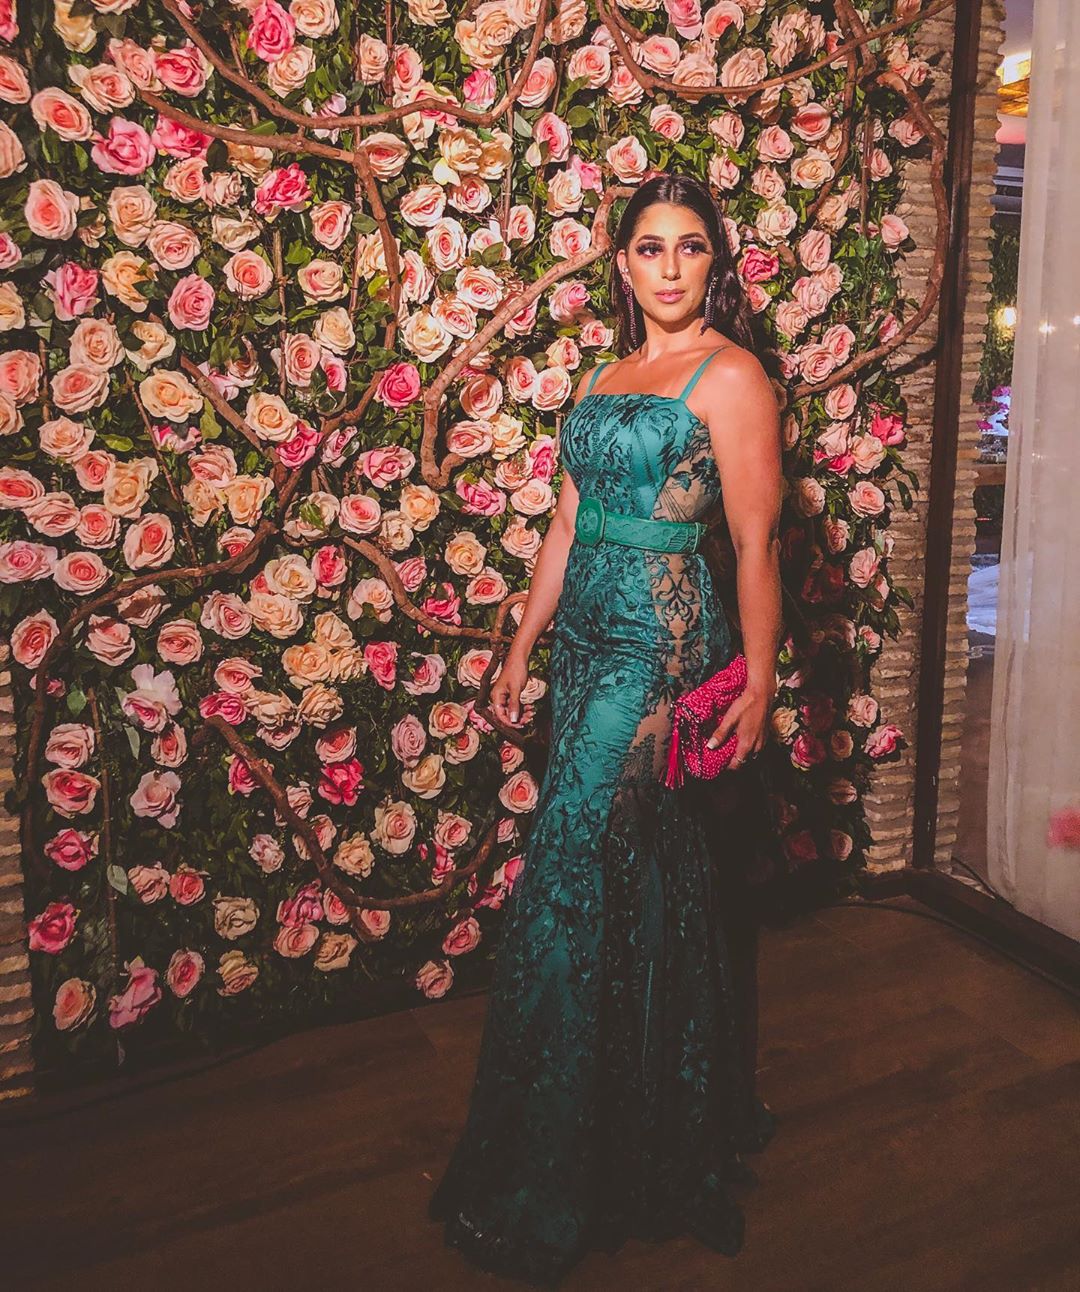 Vestido verde esmeralda: 50 looks increíbles para inspirarte